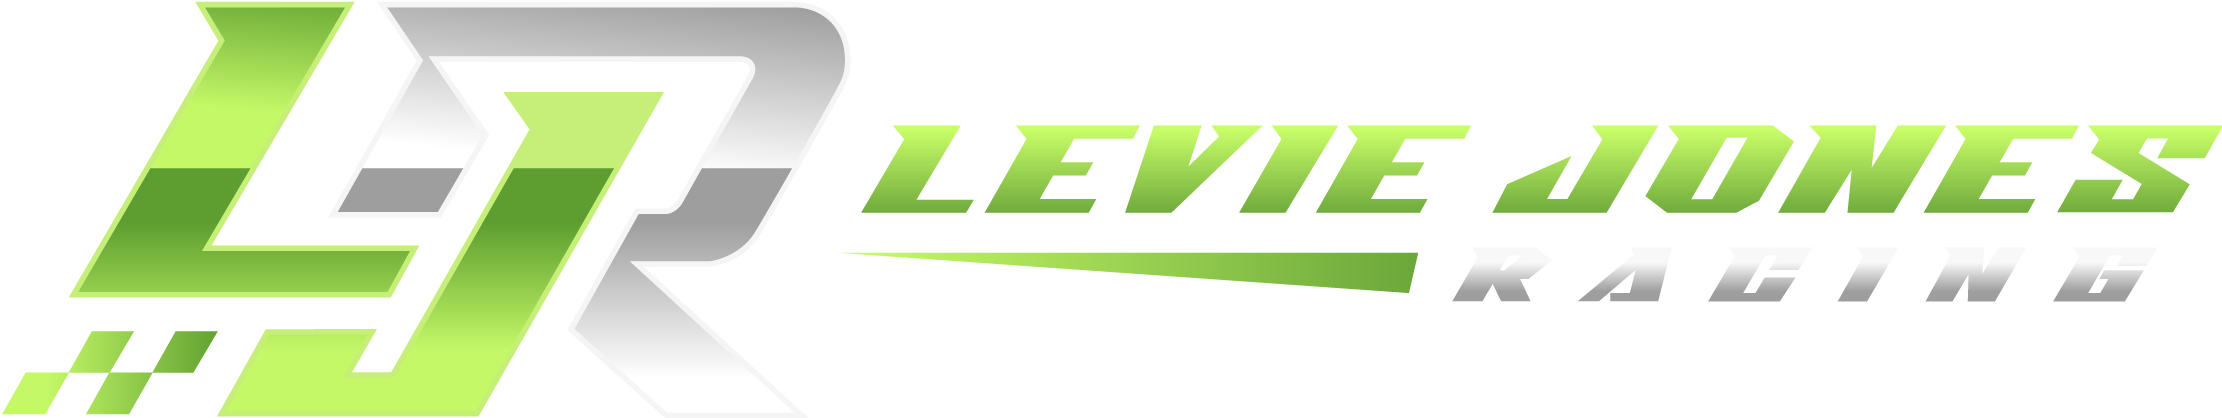 Levie Jones Racing